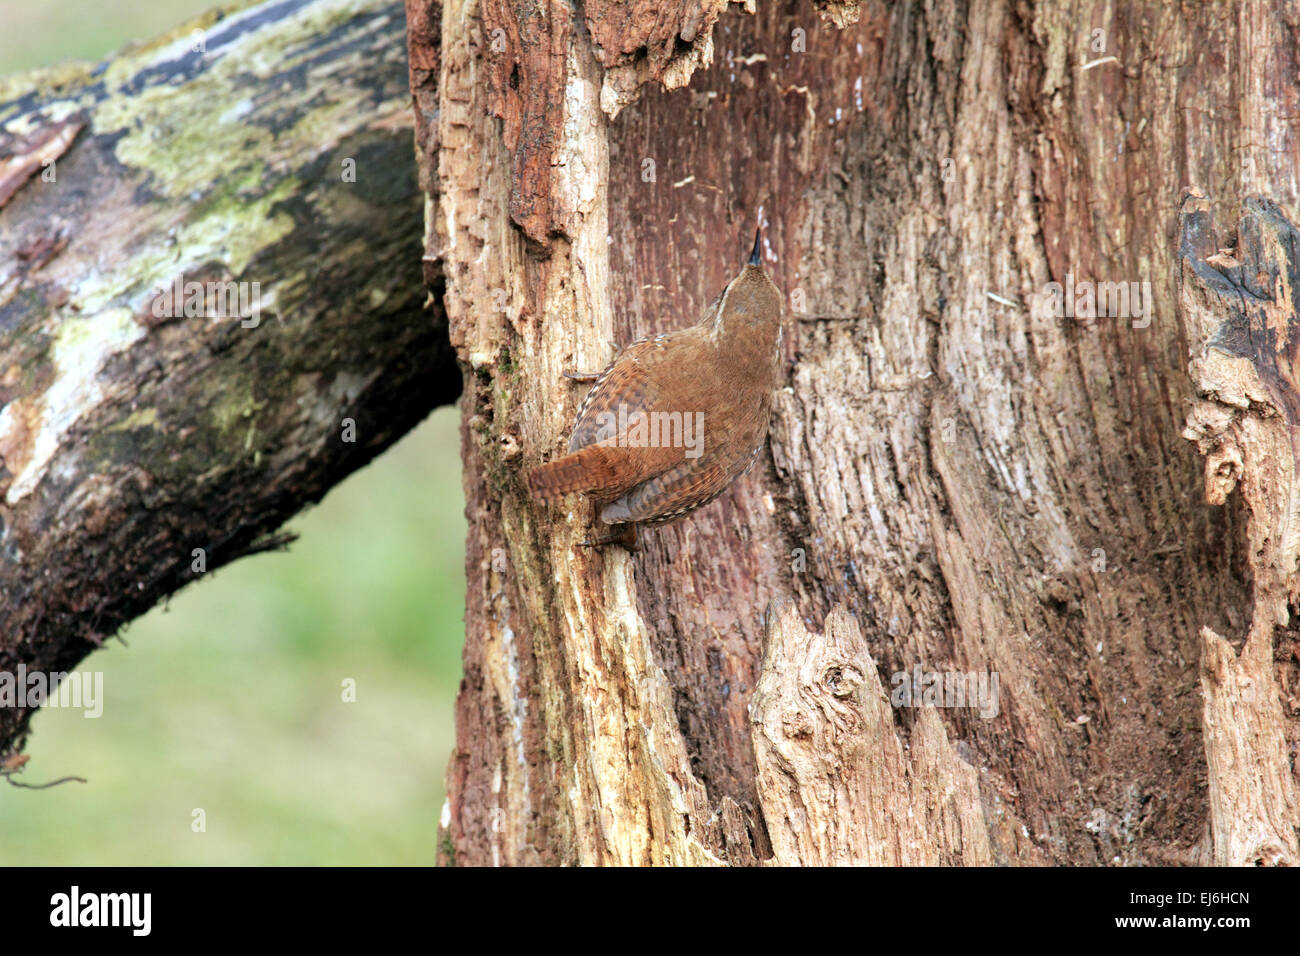 Scricciolo Troglodytes troglodytes un piccolo uccello marrone con un forte canzone Foto Stock